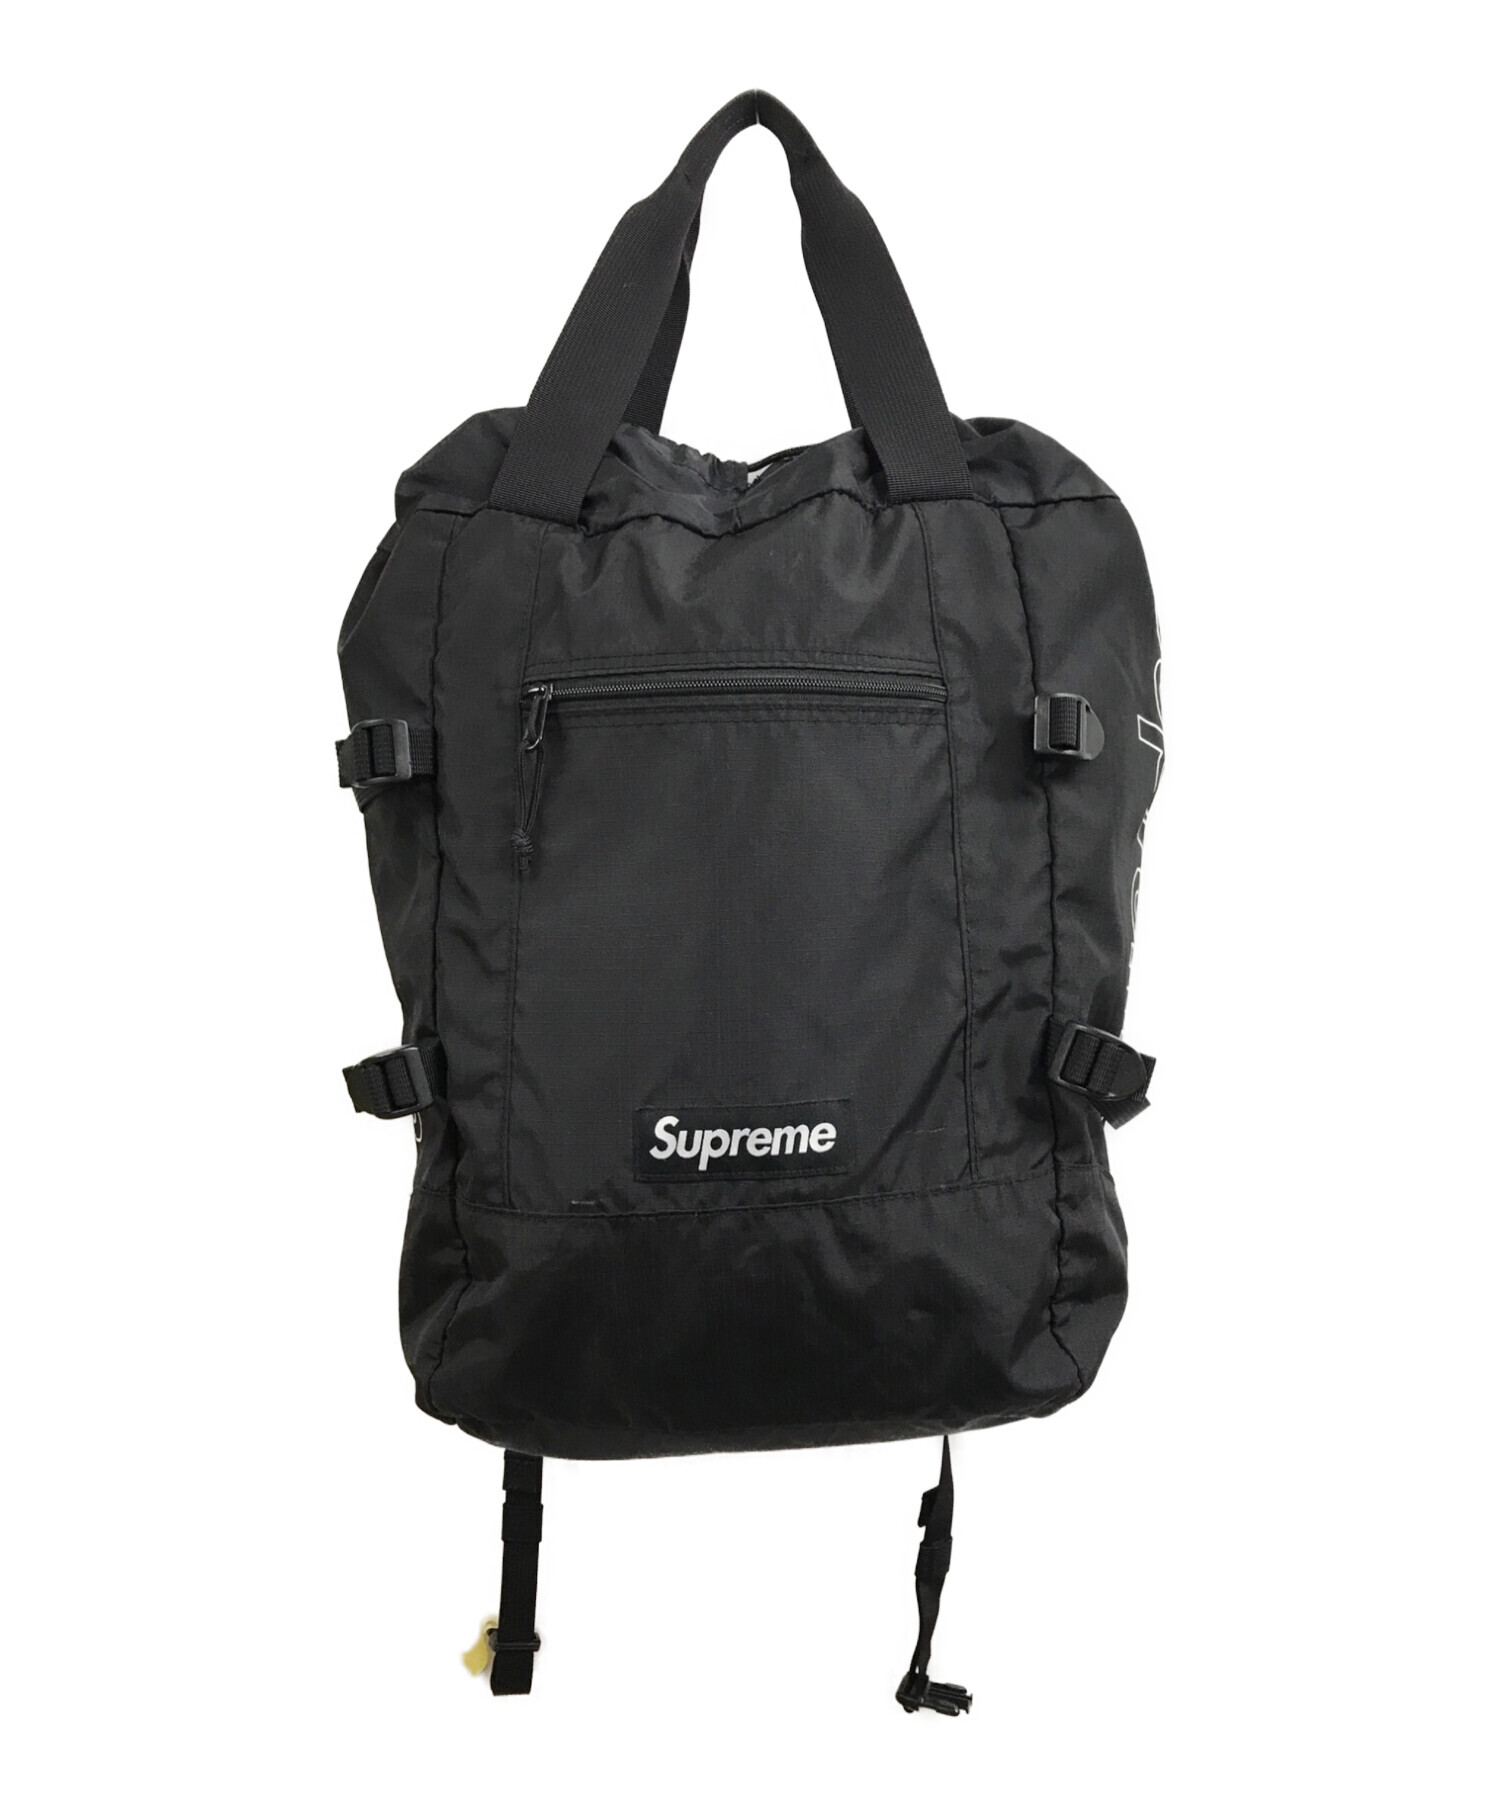 【送料込みブラックカラー】supreme Tote Backpack